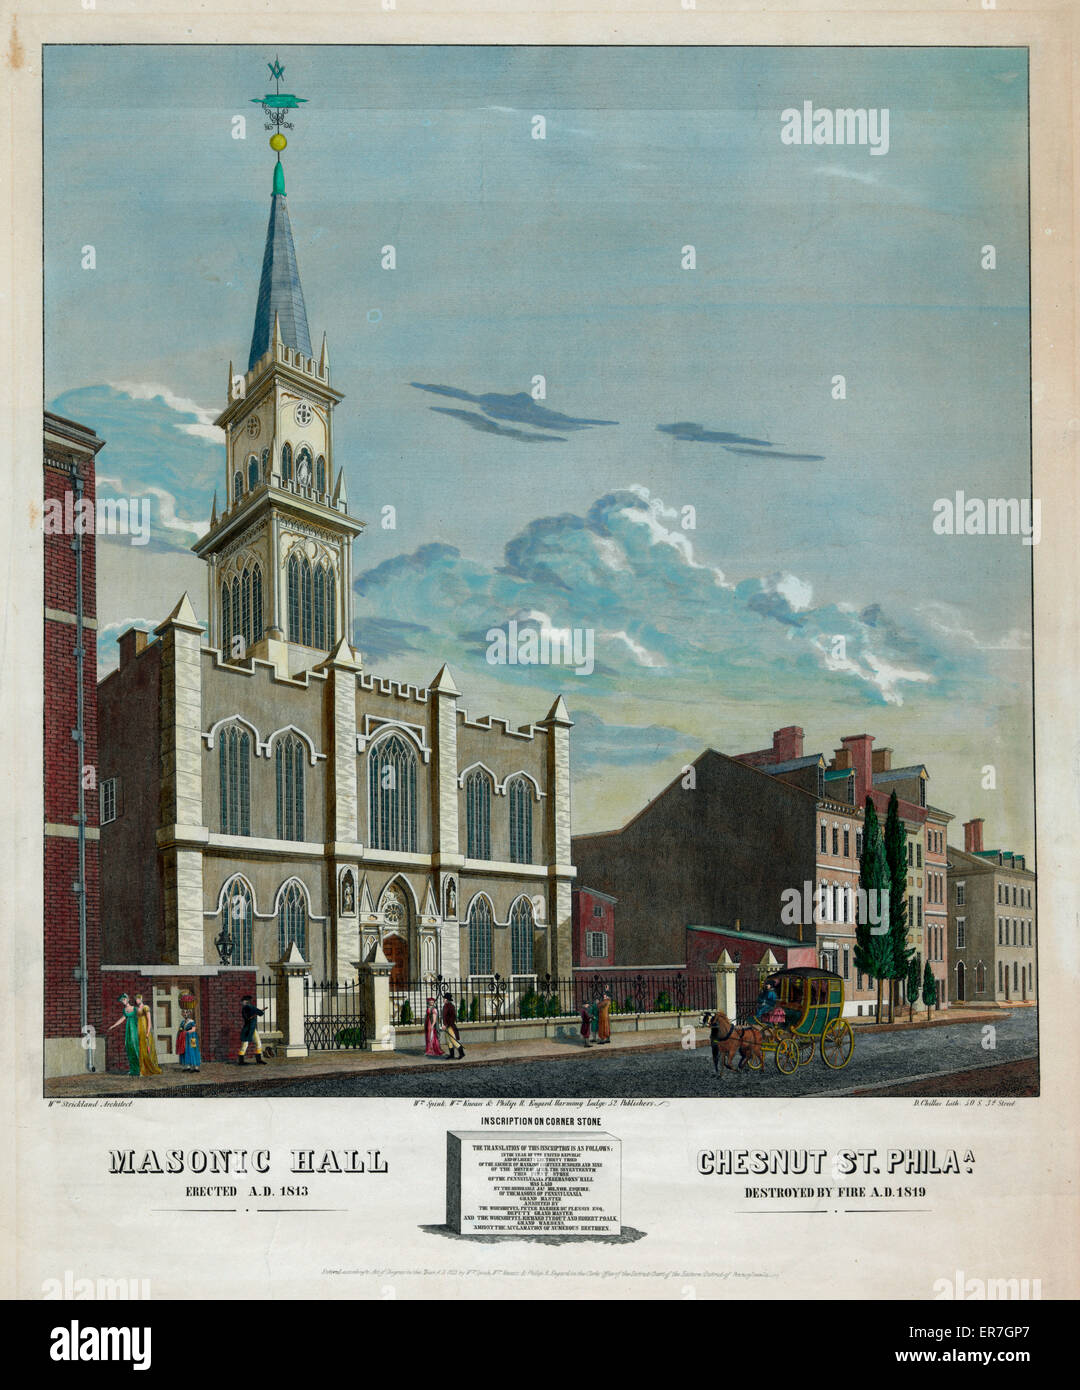 Masonic Hall Chestnut St. Philharmonique Banque D'Images